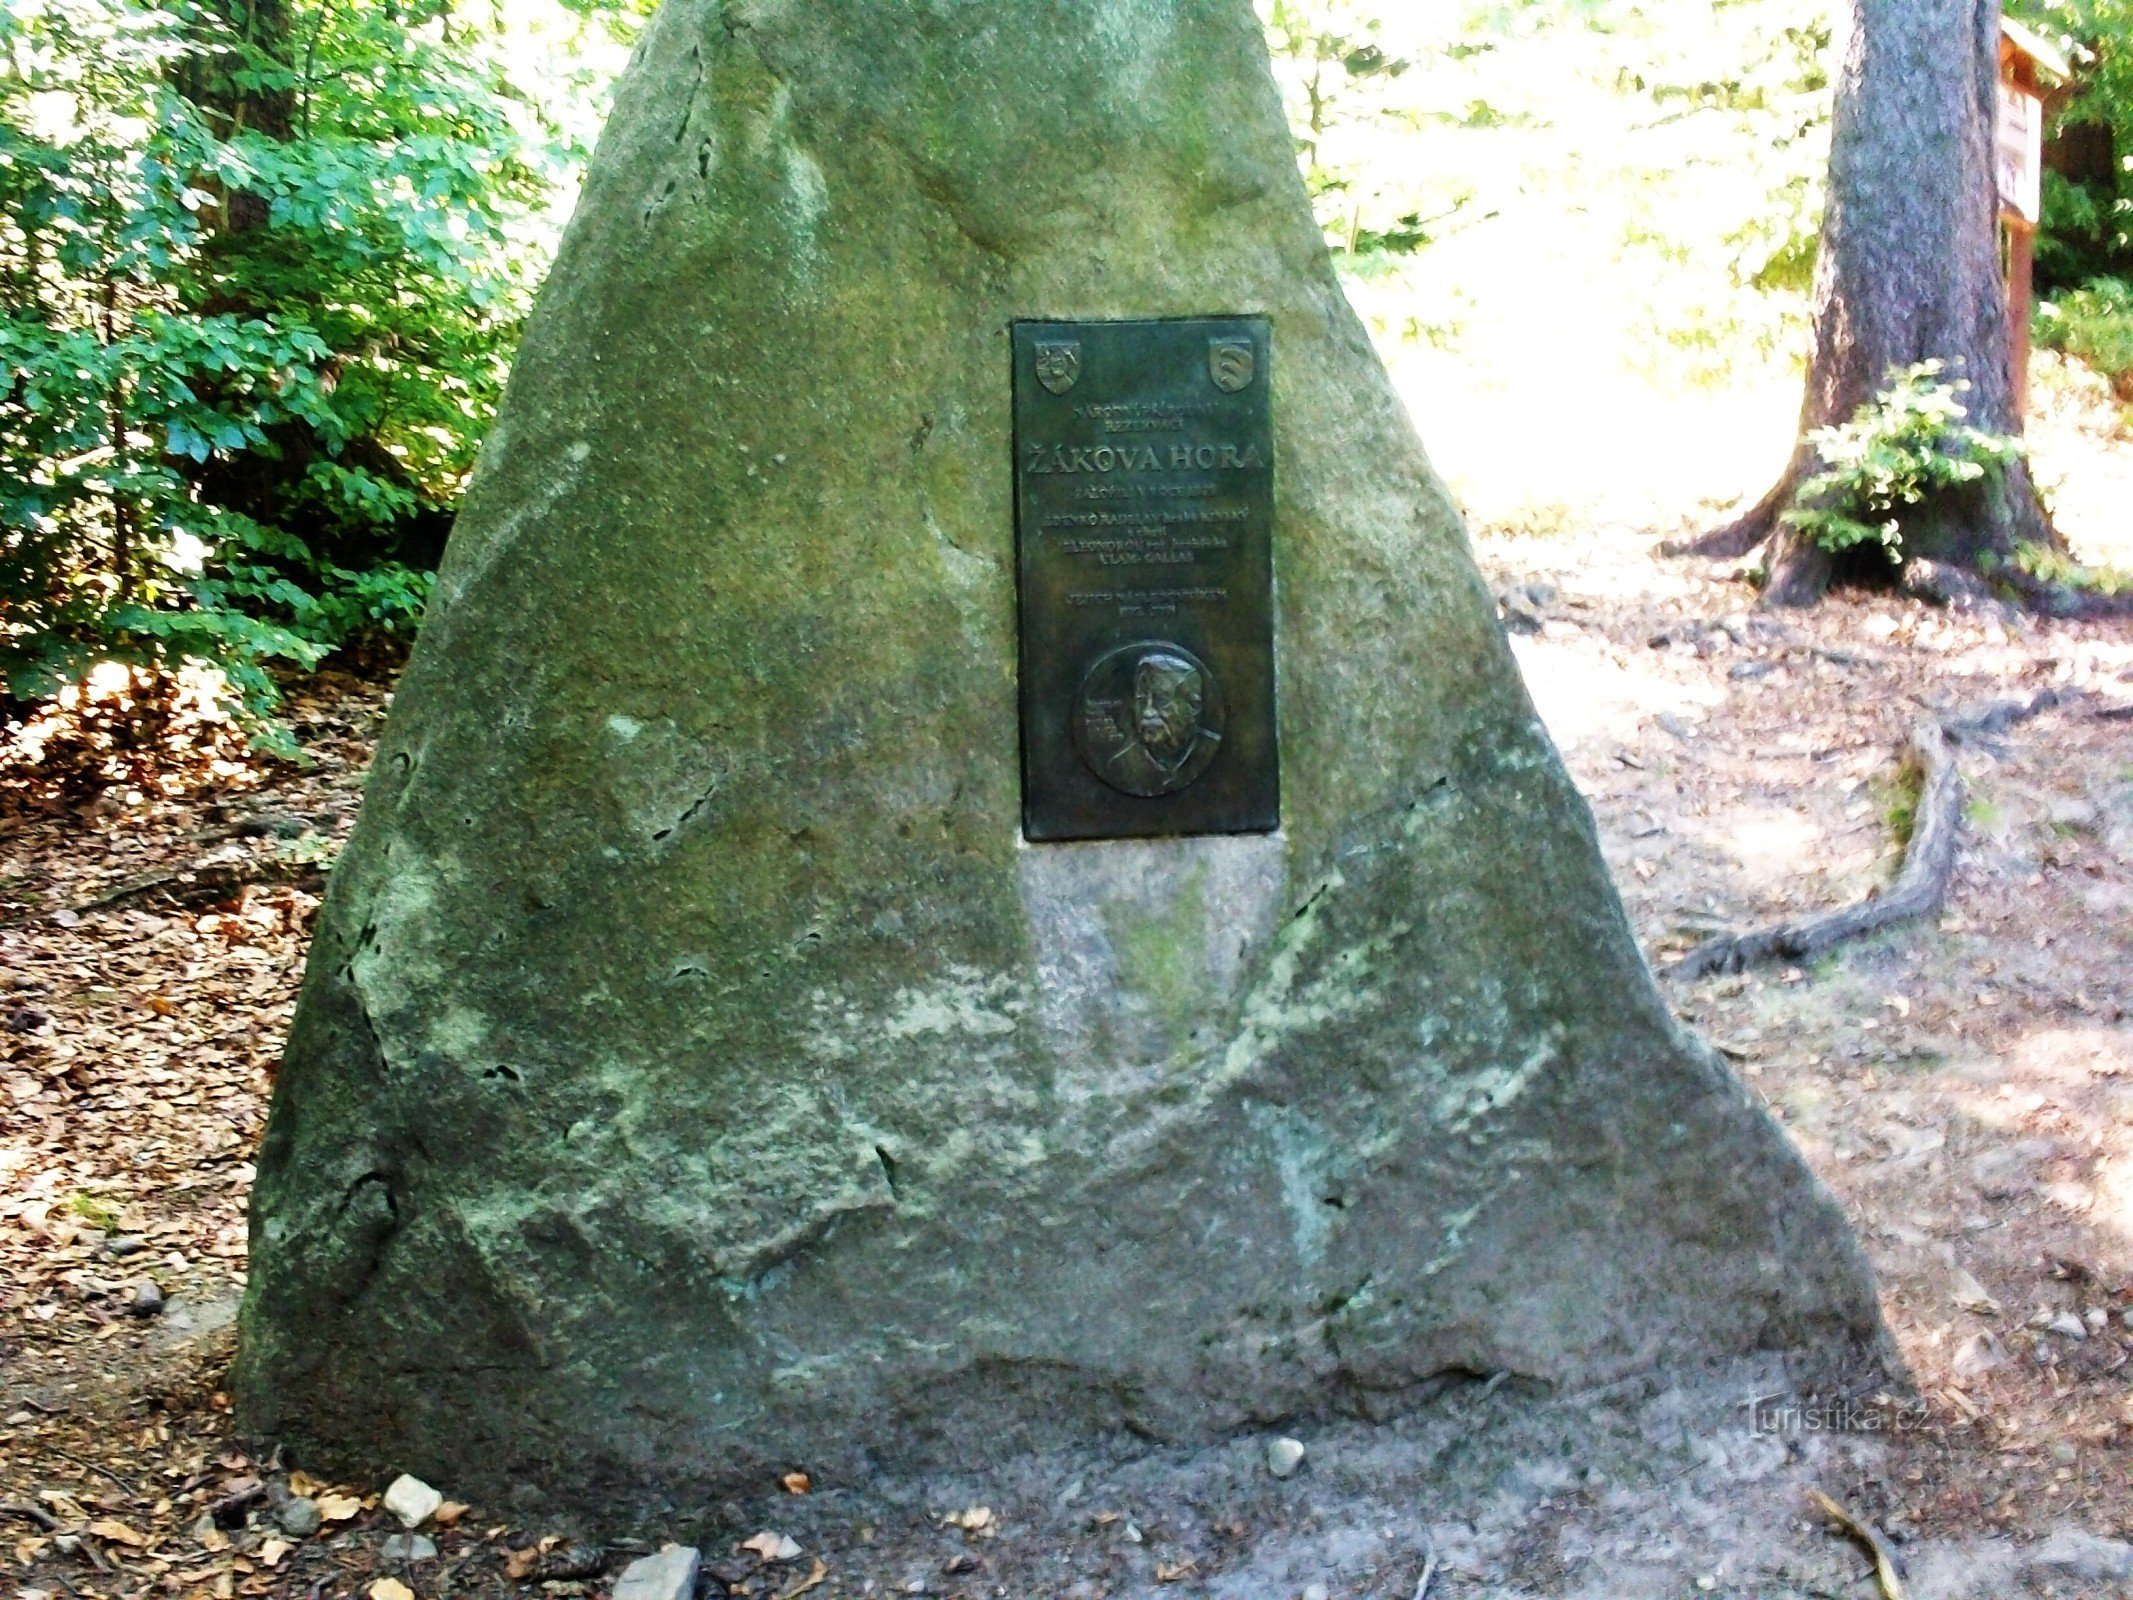 Pomnik założycieli NPR Žákova Hora